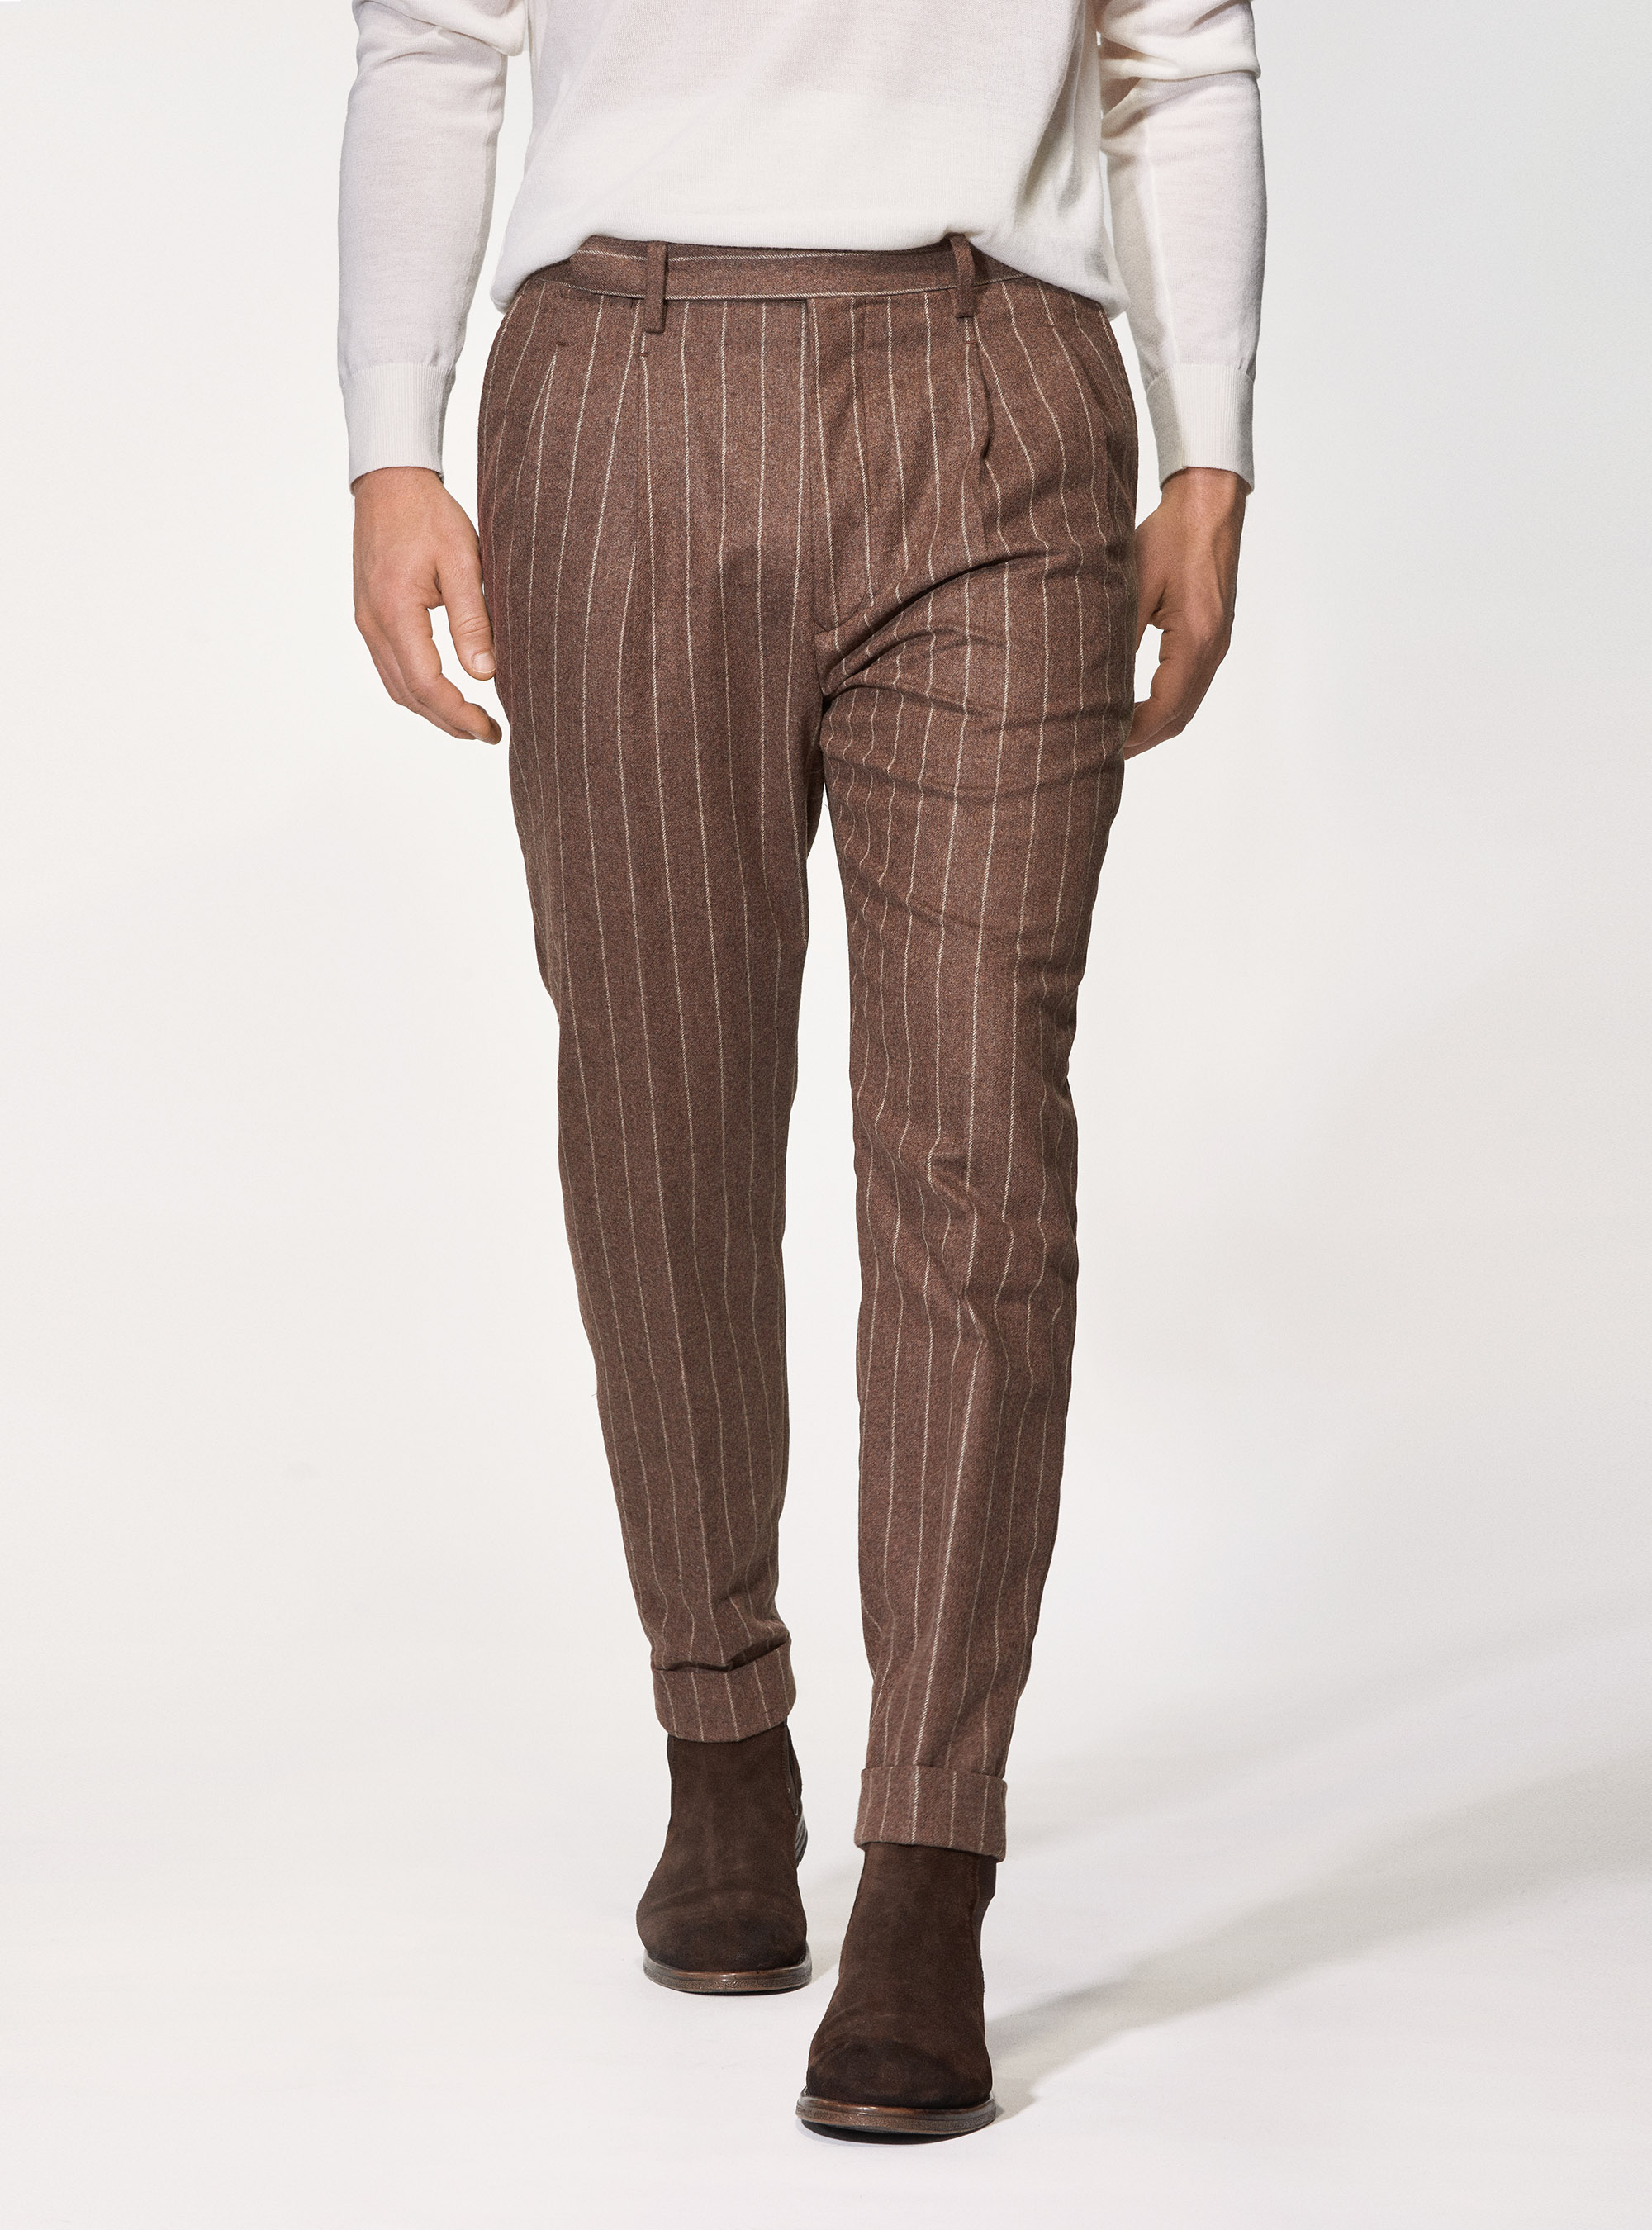 Gutteridge - Pantaloni per abito tabacco in pura lana gessata Vitale Barberis Canonico